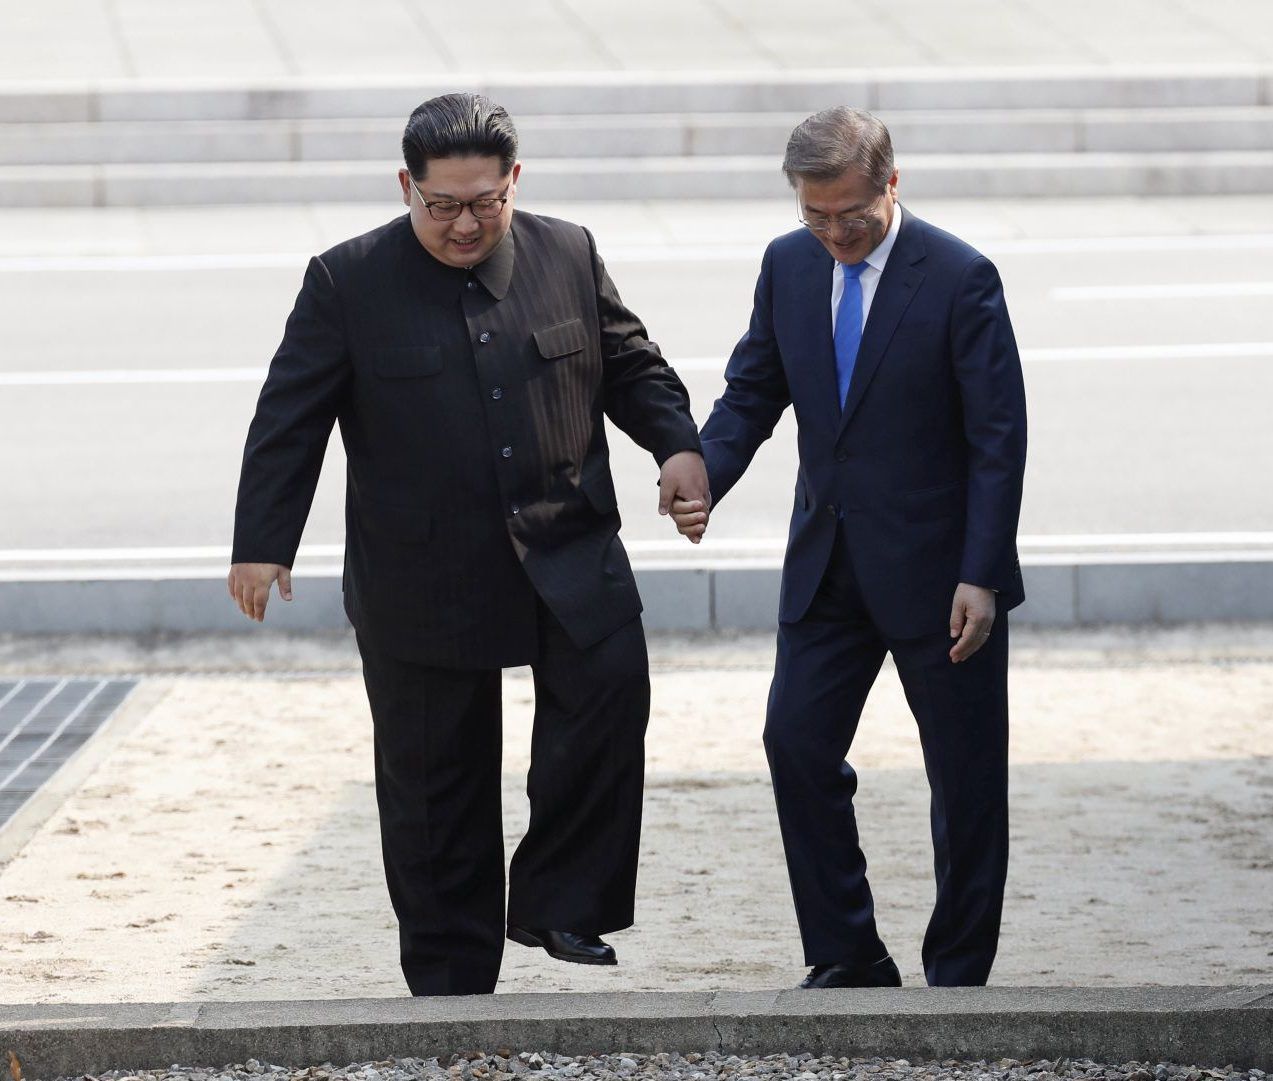 Auch dieses Foto hat eine historische Bedeutung. Zu sehen sind Kim Jong-un und Südkoreas Präsident Moon Jae-in, wie sie im April 2018 gemeinsam die militärische Grenzlinie zur Südseite im Grenzdorf Panmunjom in der entmilitarisierten Zone überschreiten. Ihr Treffen sollte bessere innerkoreanische Beziehungen einleiten.